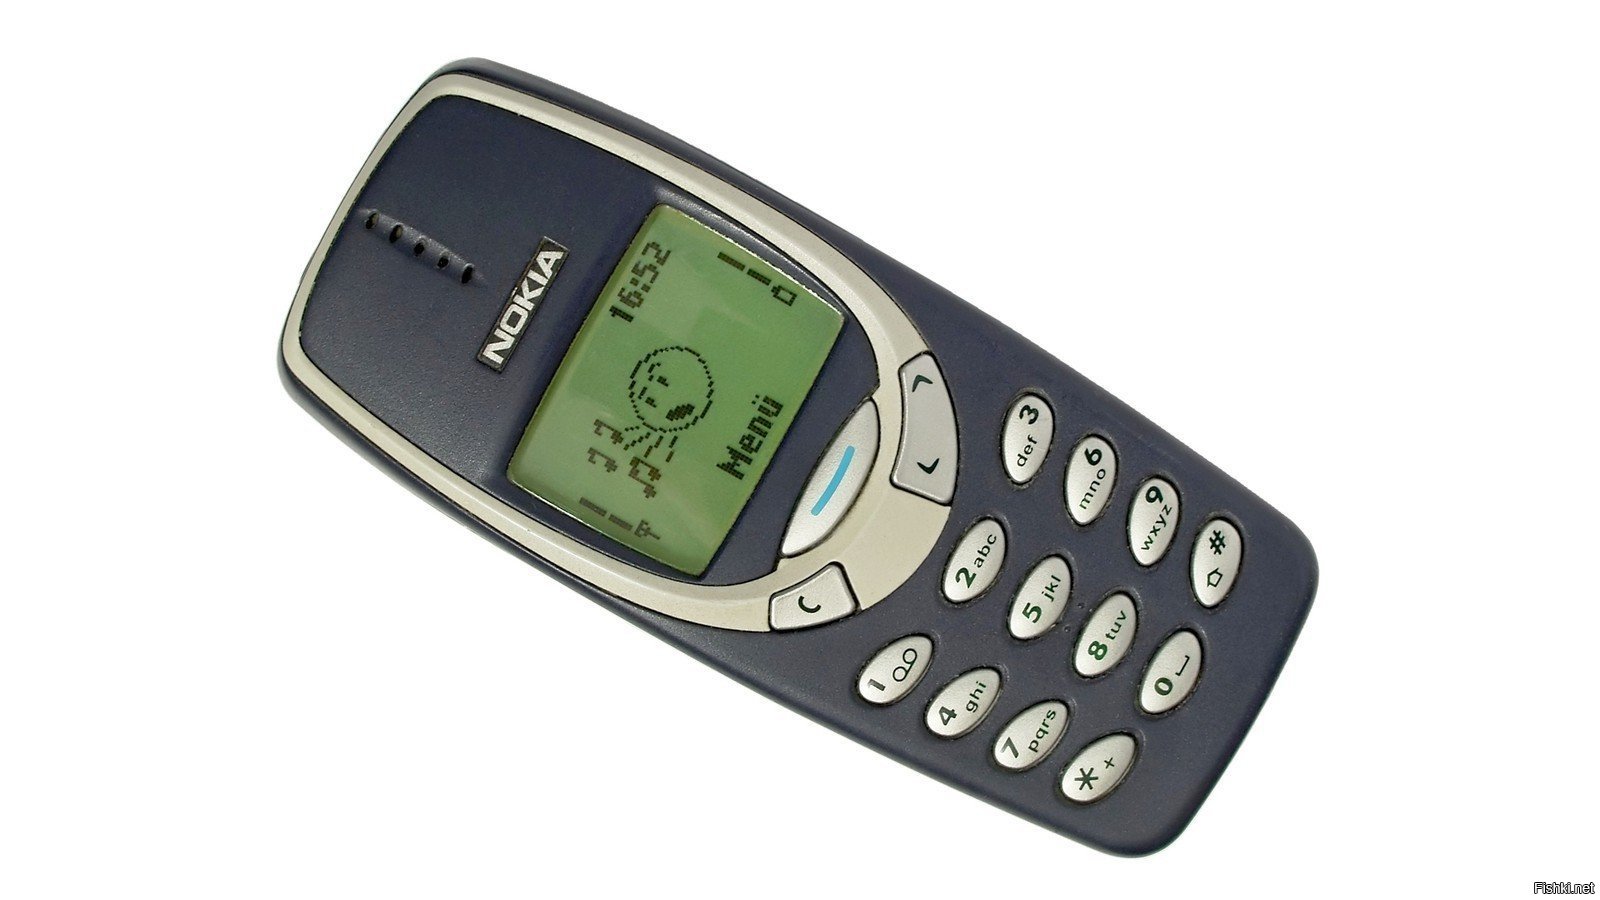 Nokia 3310 Classic